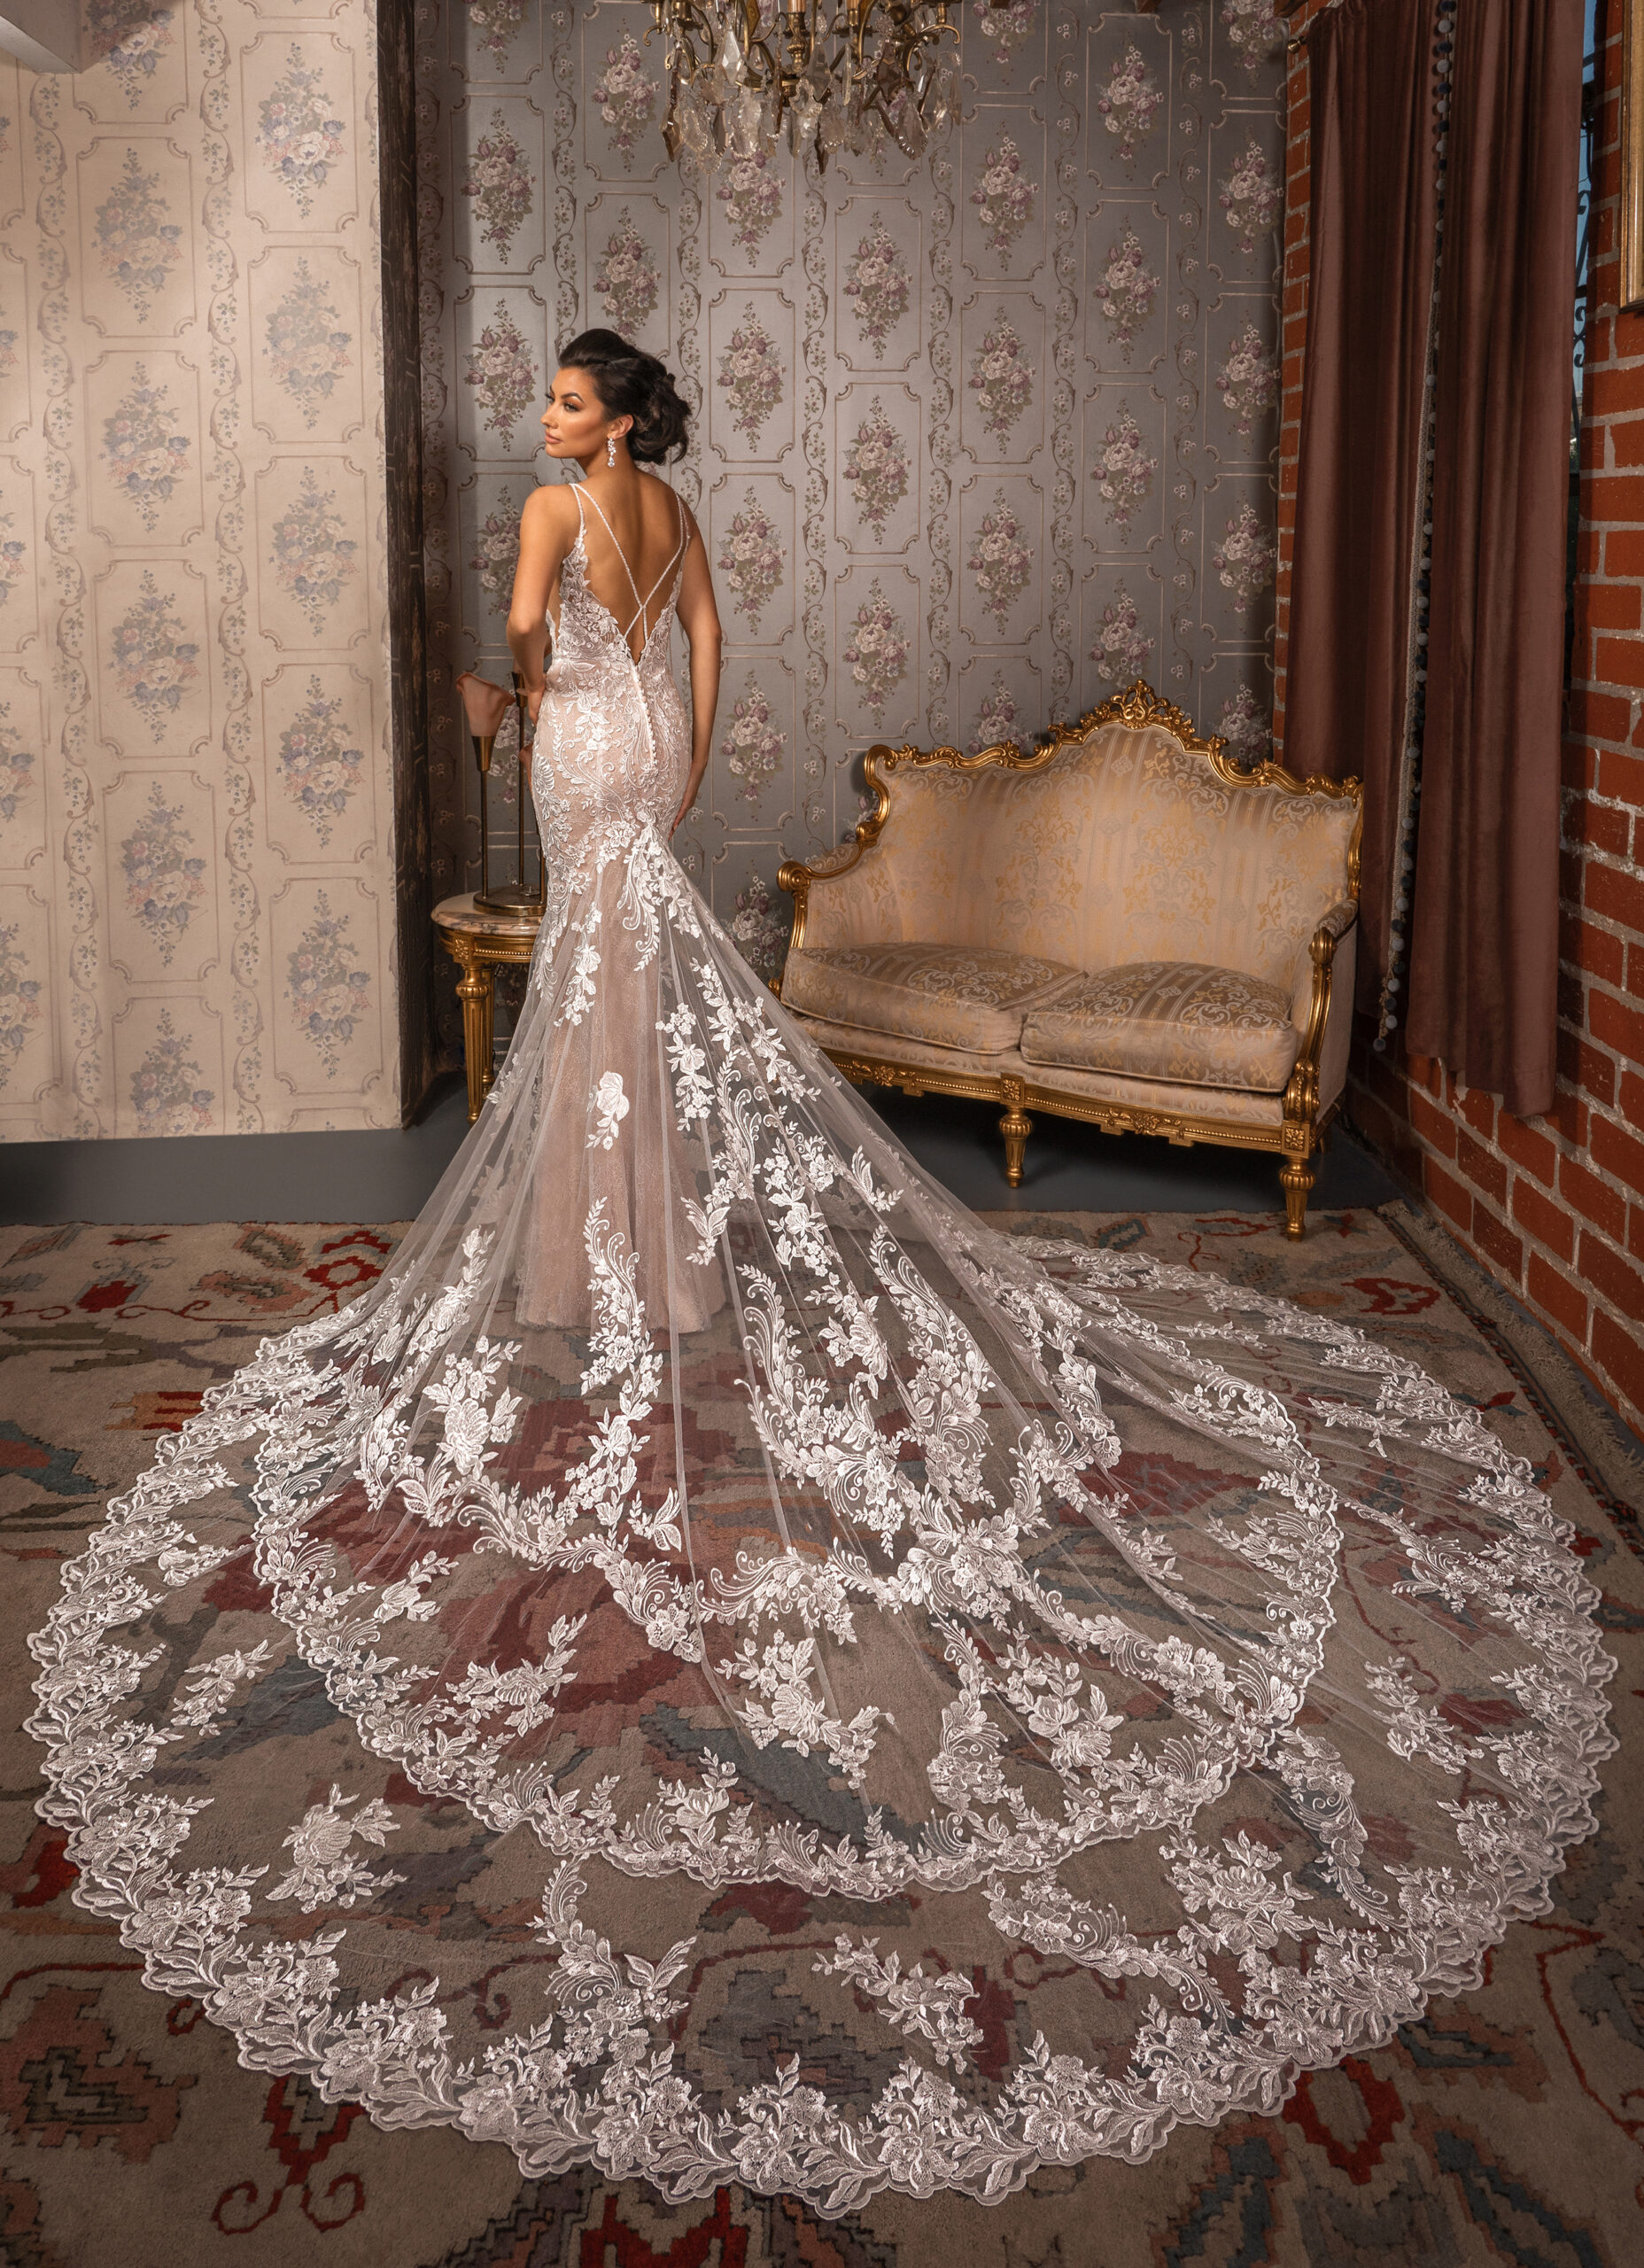 balsrang marak recommends christina model wedding dress pic